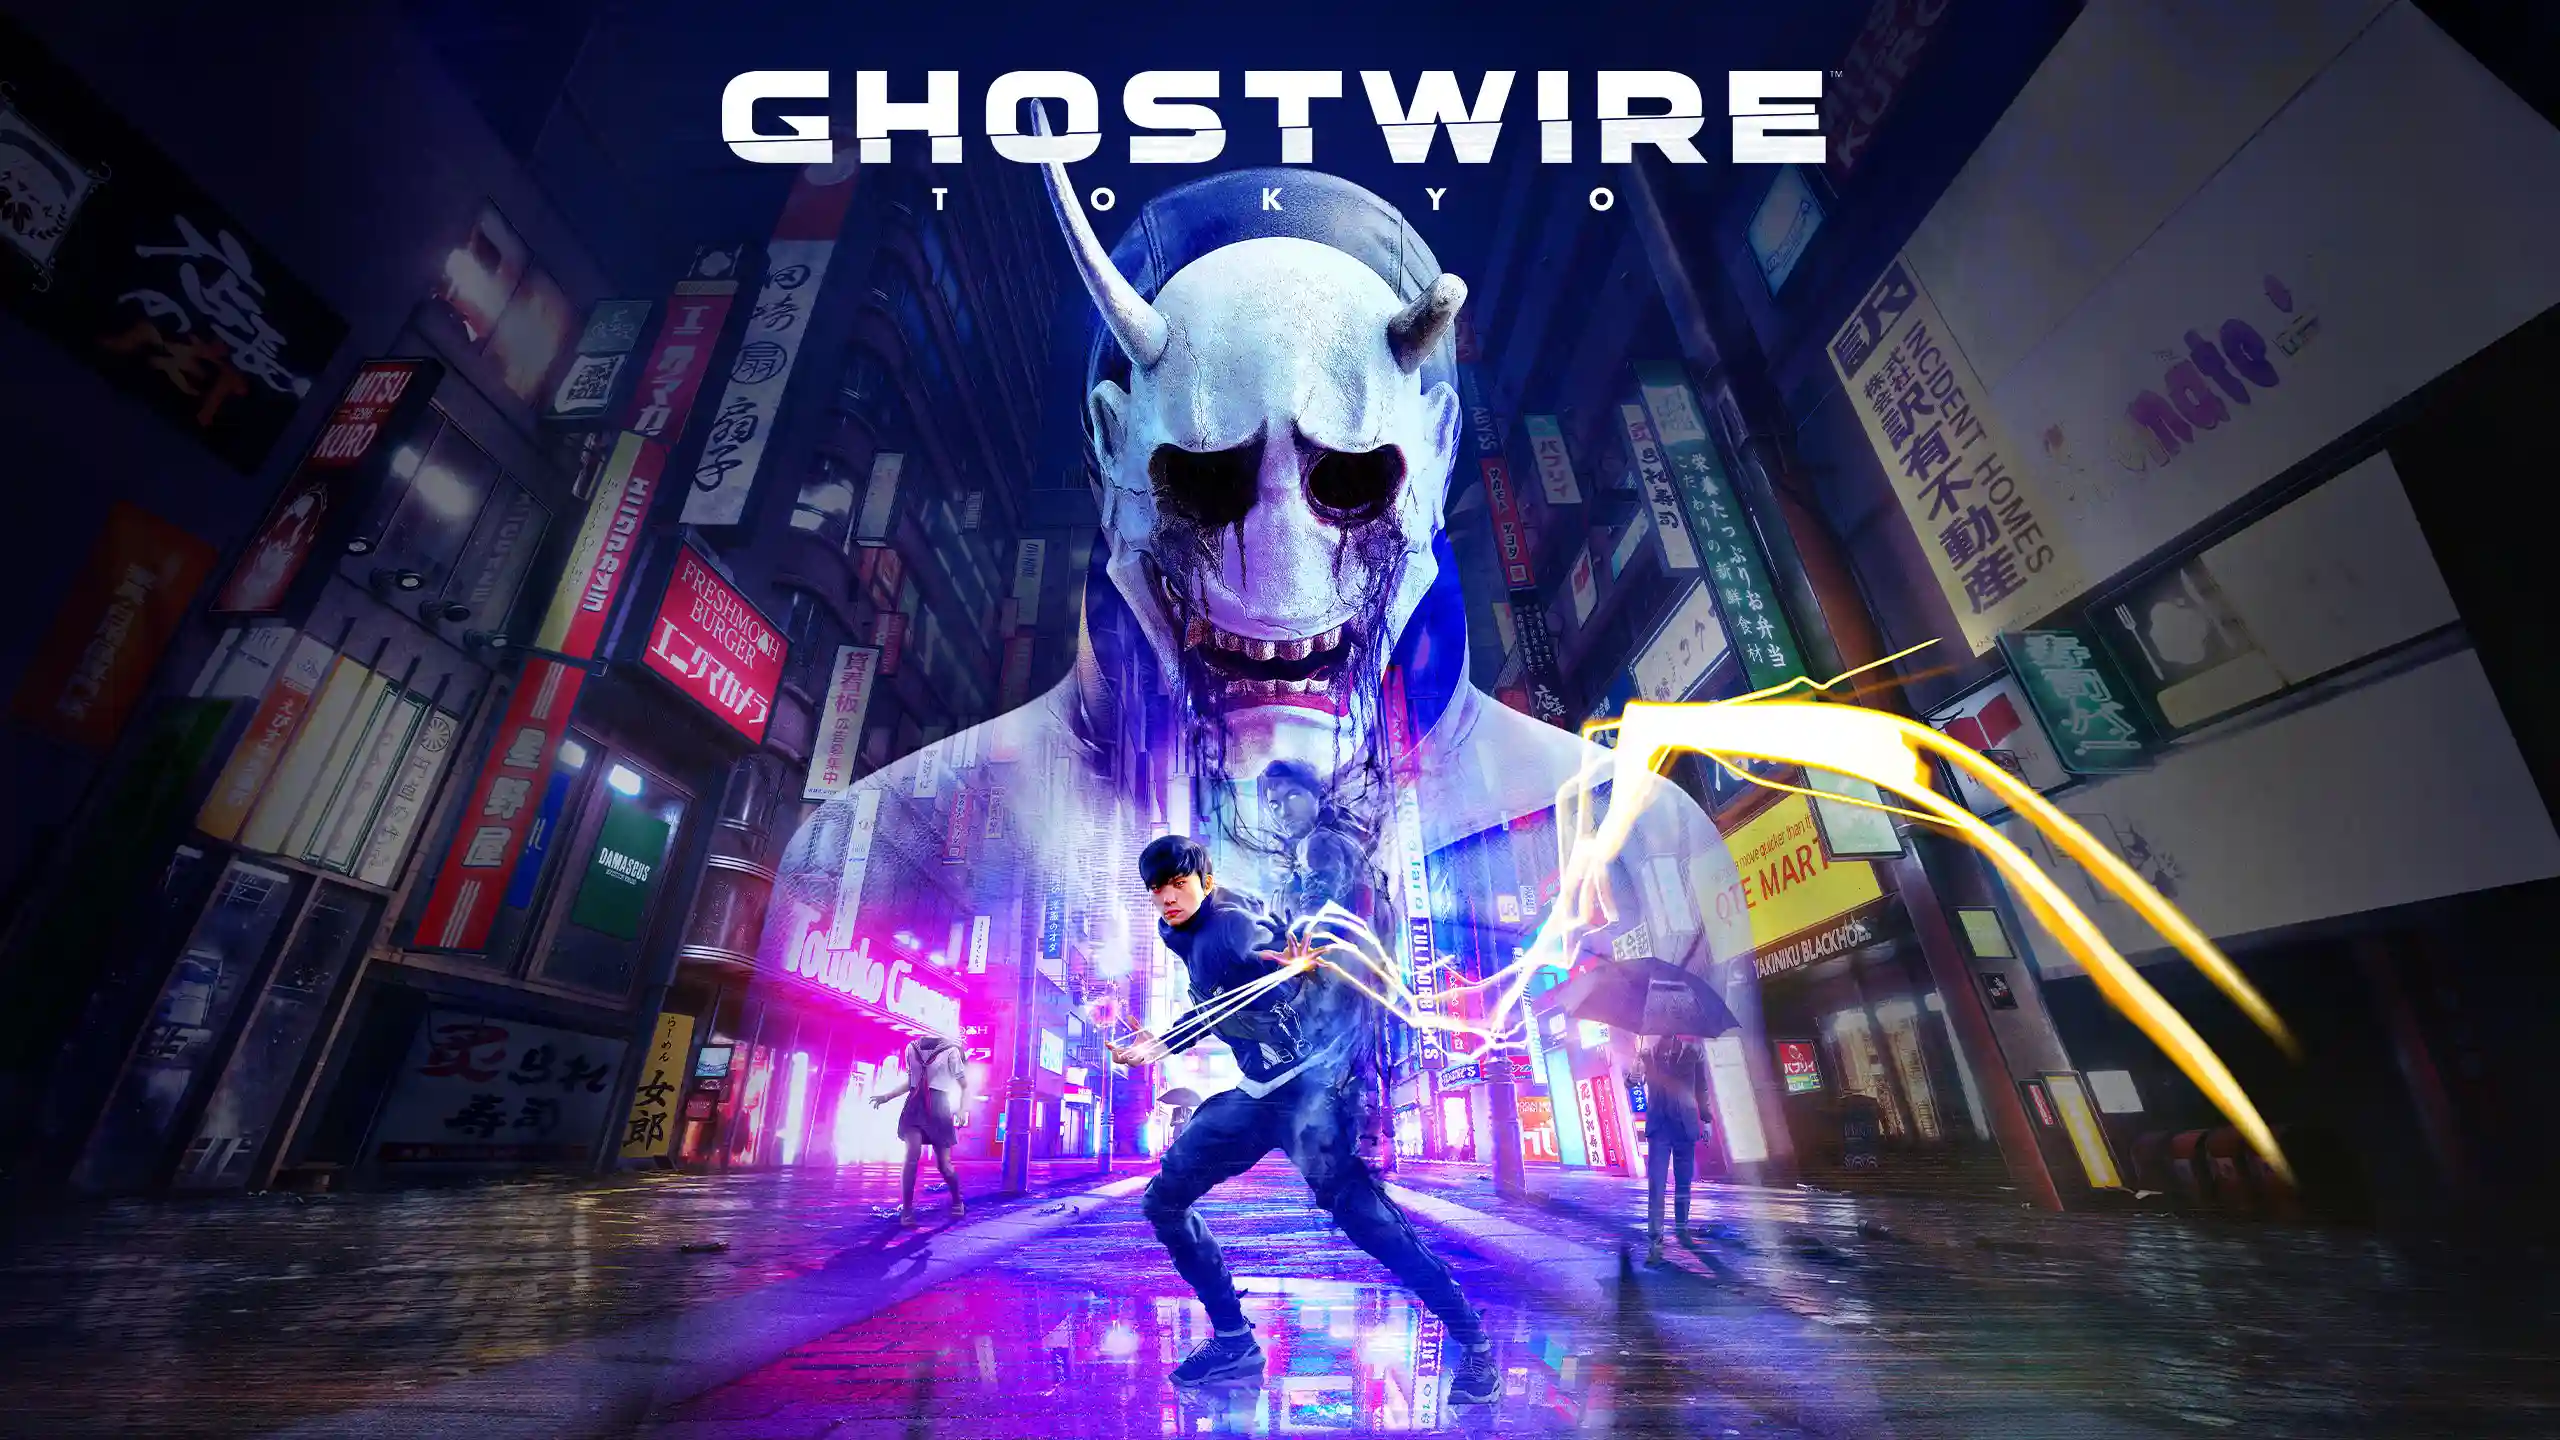 بهترین بازی های شبیه به Ghostwire: Tokyo